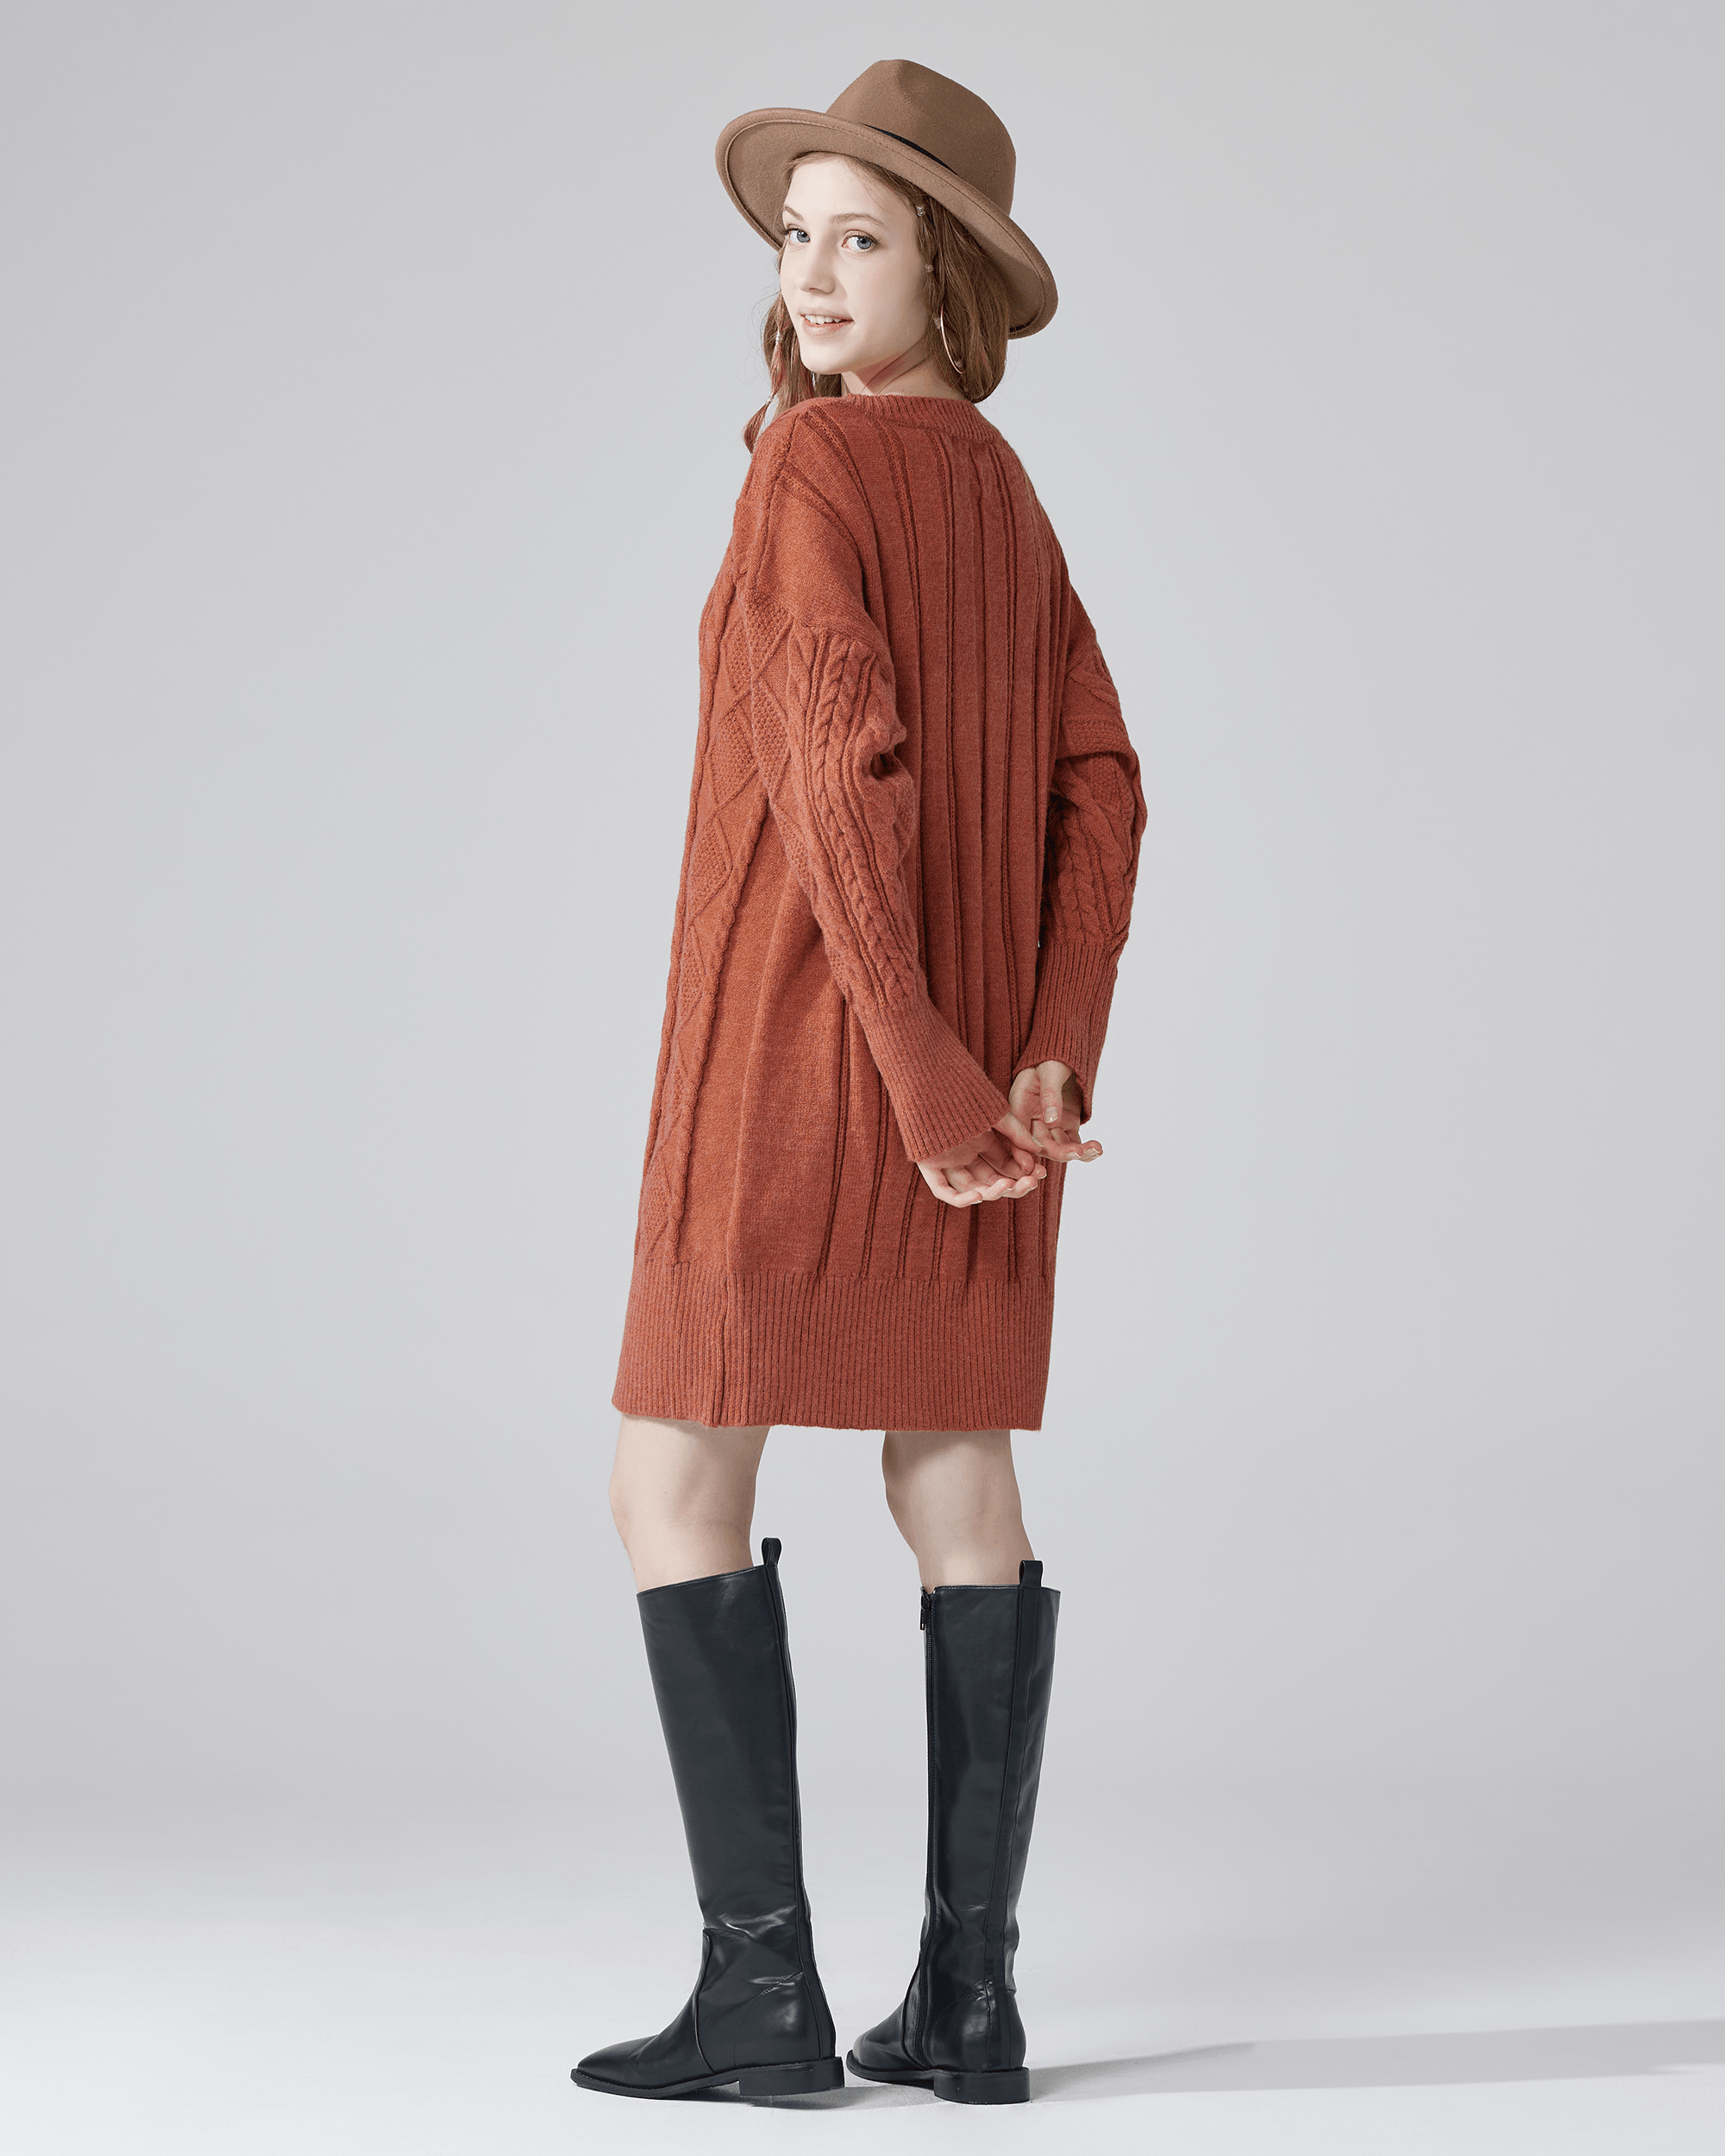 V-Neck Cable Knit Sweater Dress - Brick